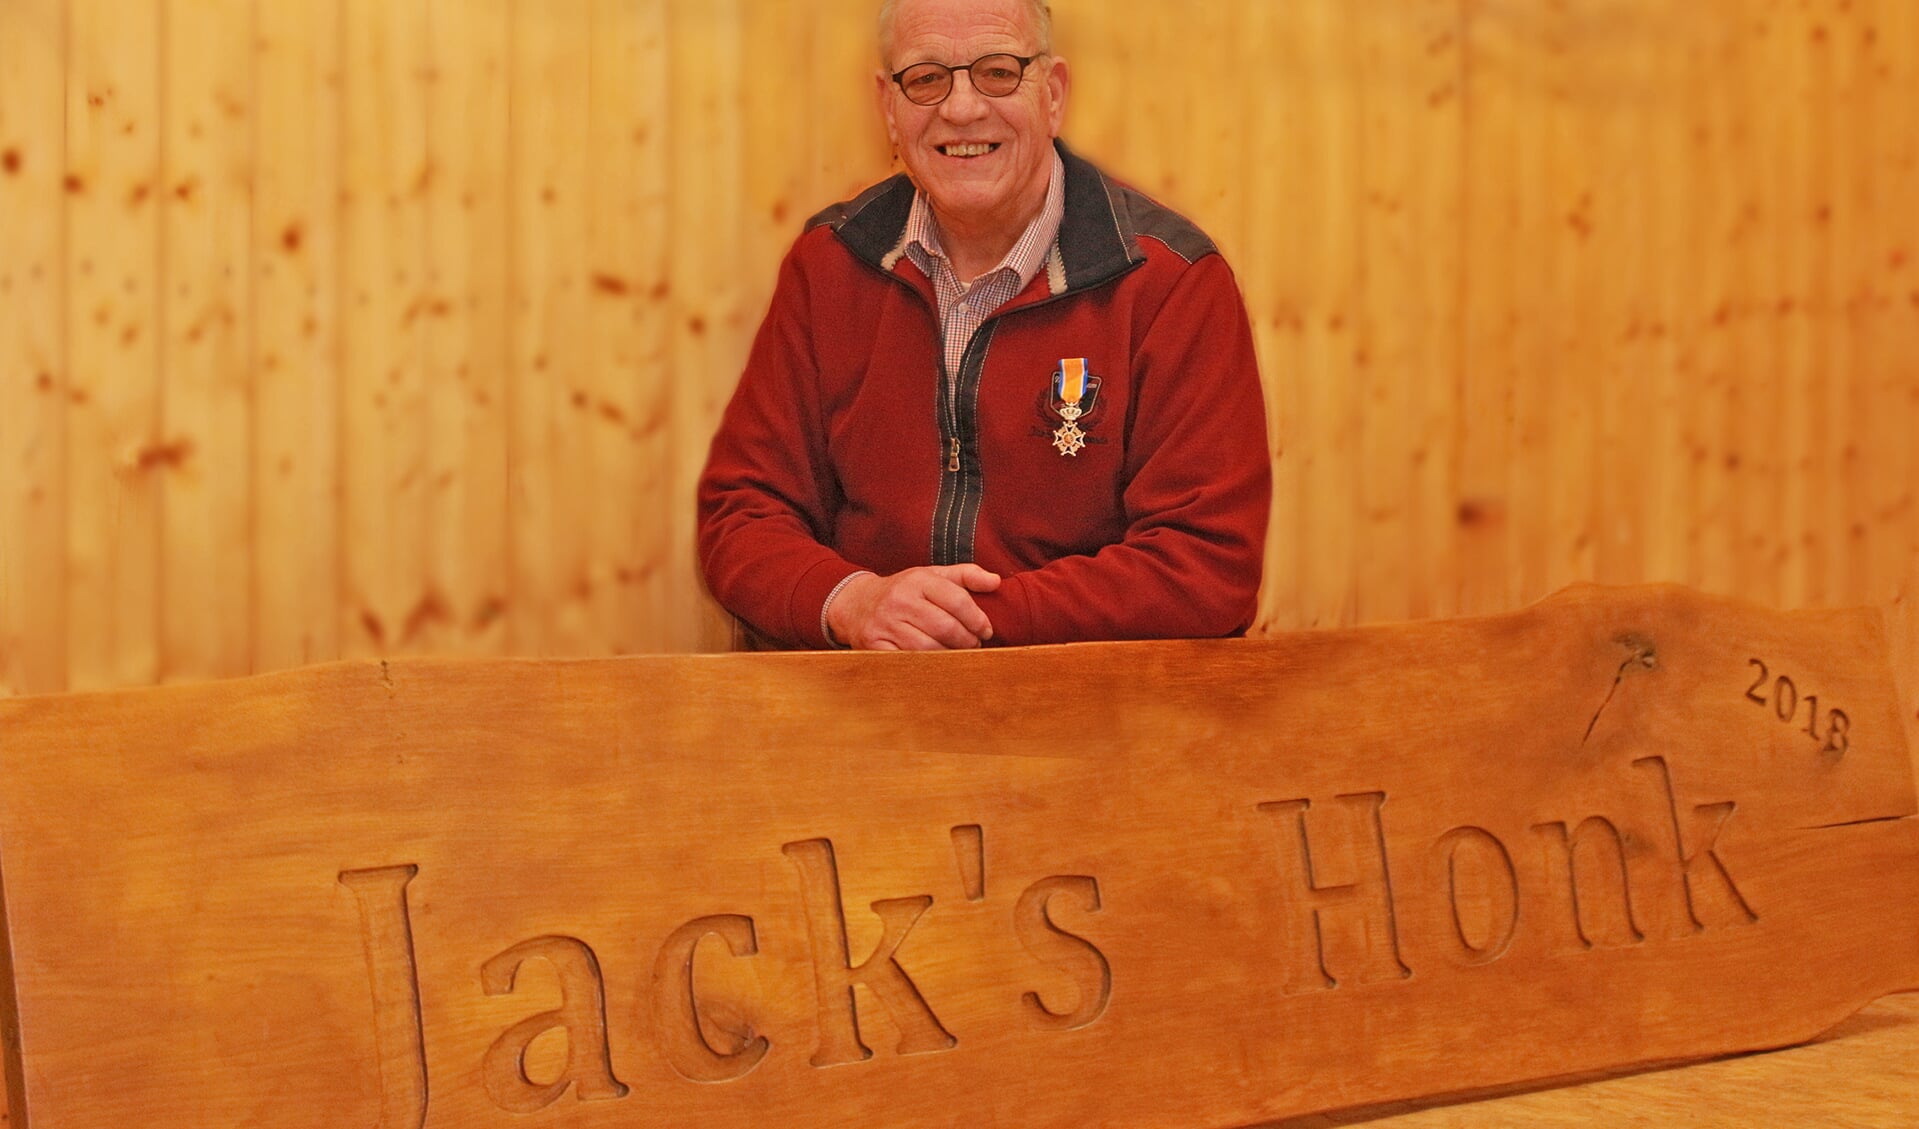 Als eerbetoon voor Jacks inzet is het Maria Goretti scoutinggebouw omgedoopt tot Jack’s Honk. FOTO ELS ROMMERS